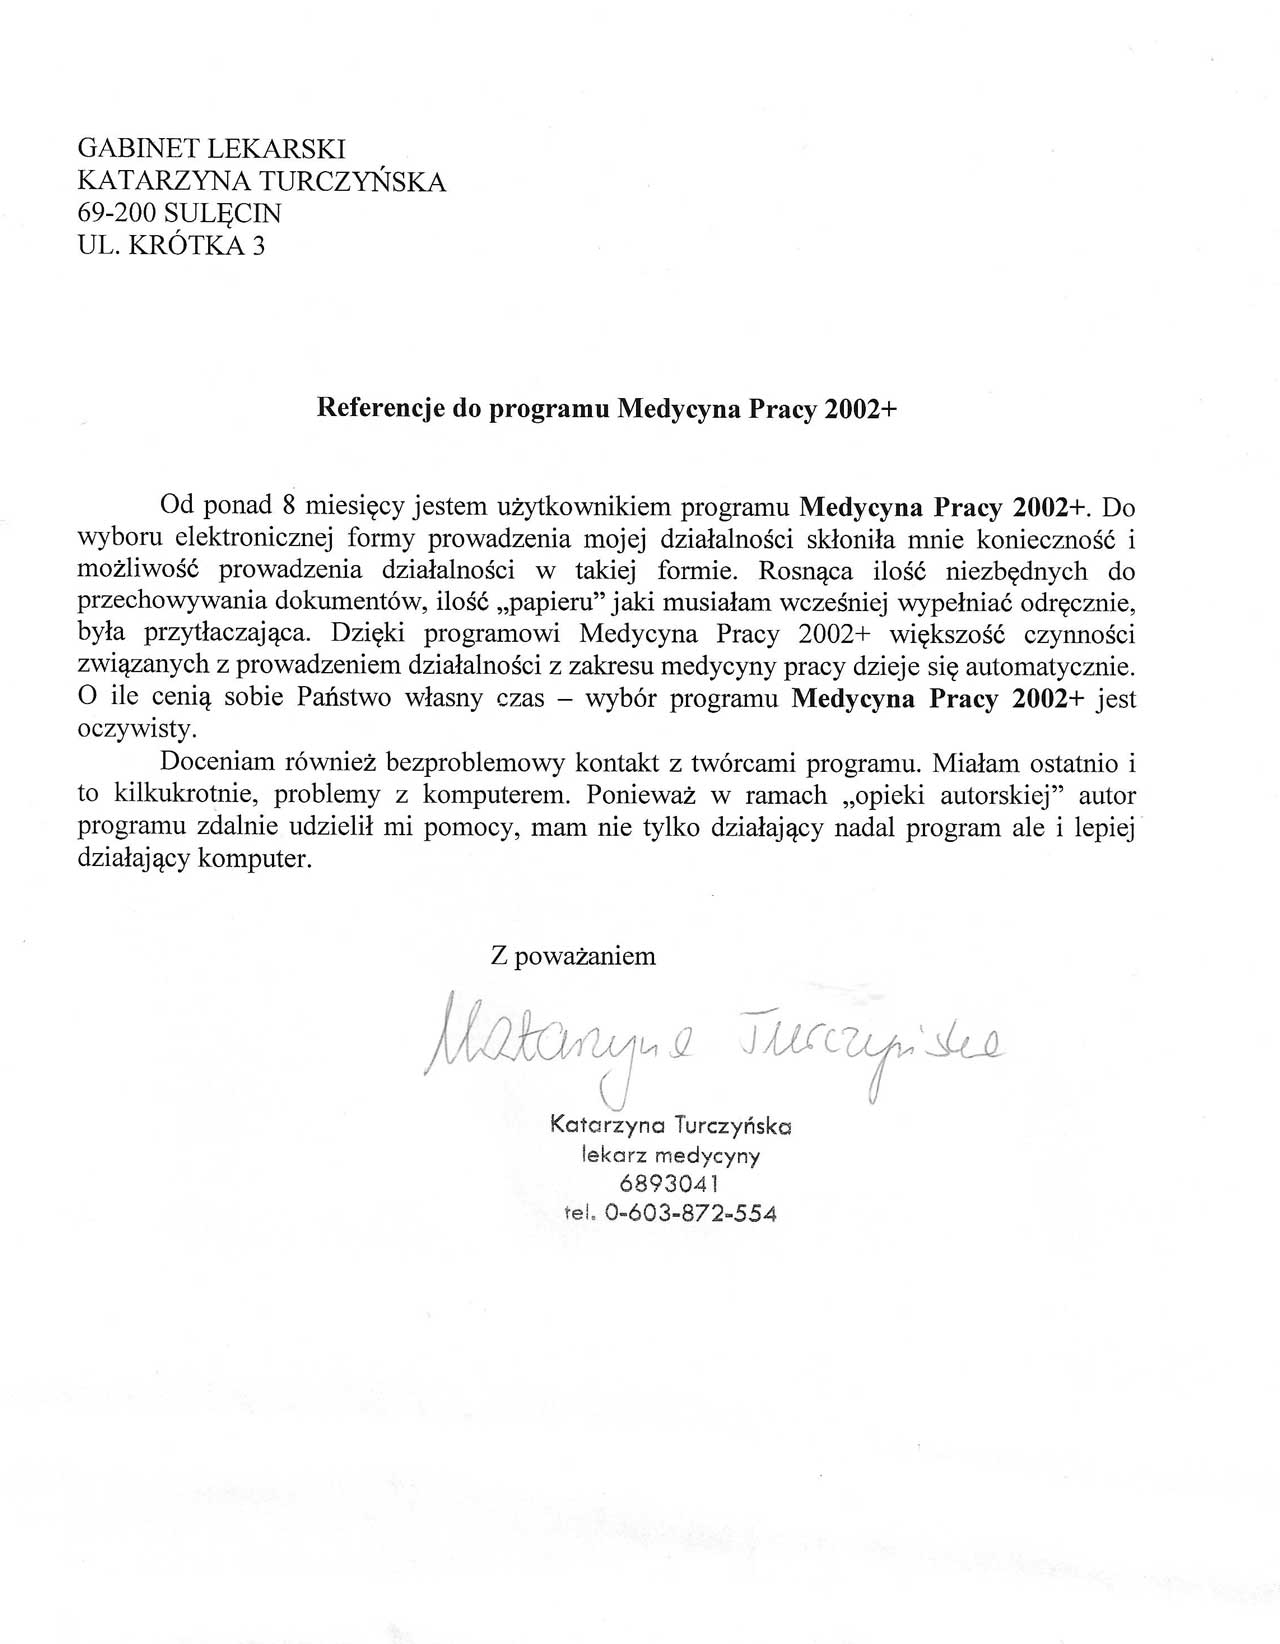 Referencje do programu Medycyna Pracy 2002+  -  Gabinet Lekarski Katarzyna Turczyńska